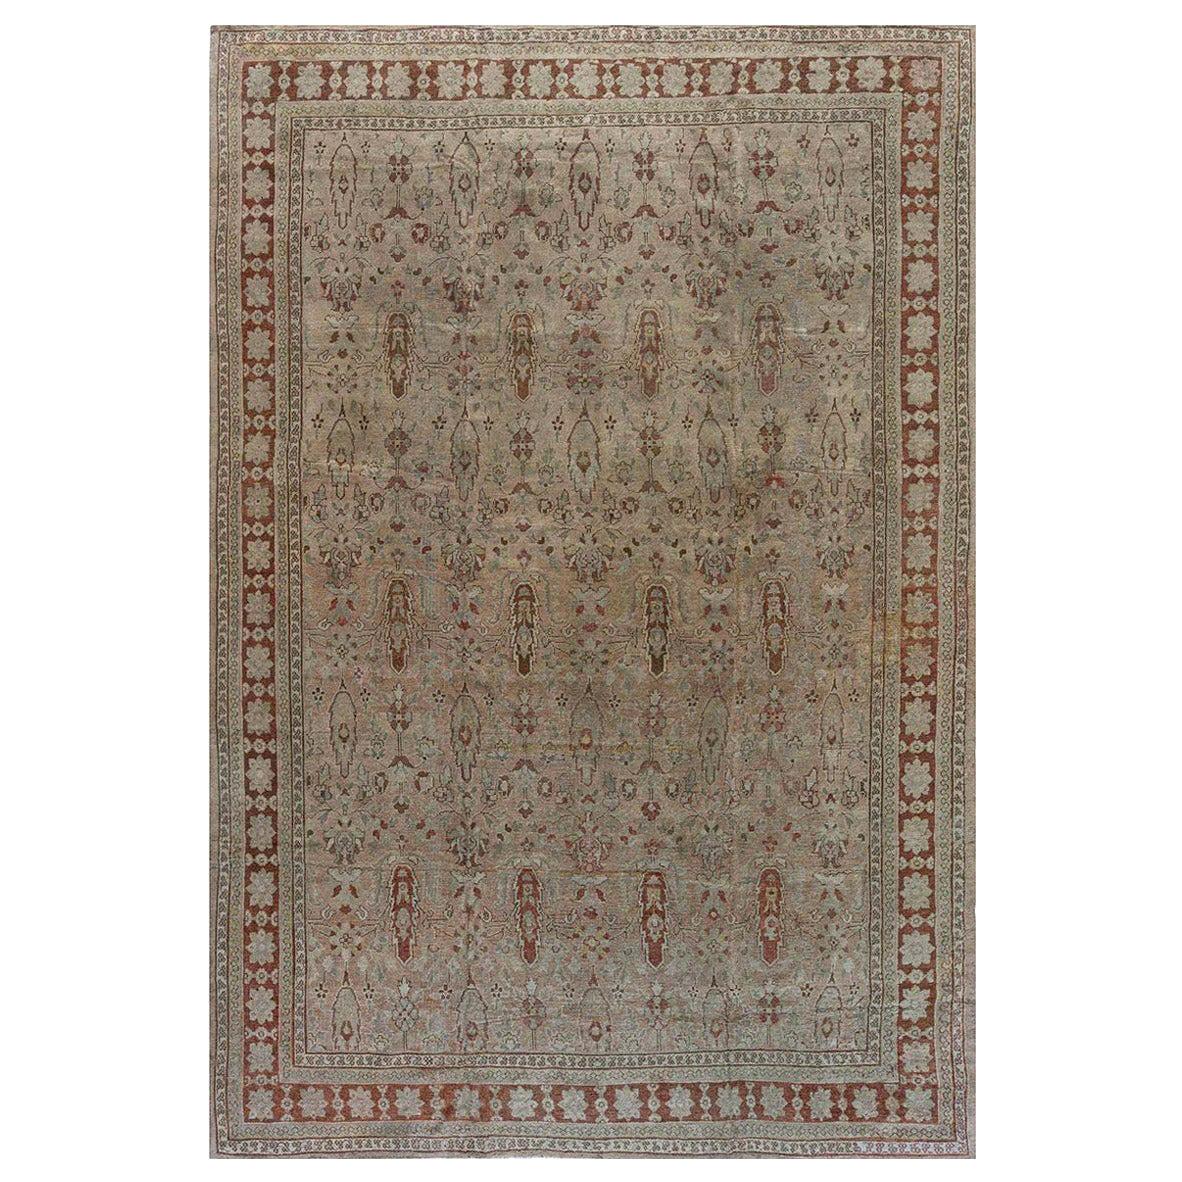 Authentischer indischer Amritsar-Teppich des 19. Jahrhunderts